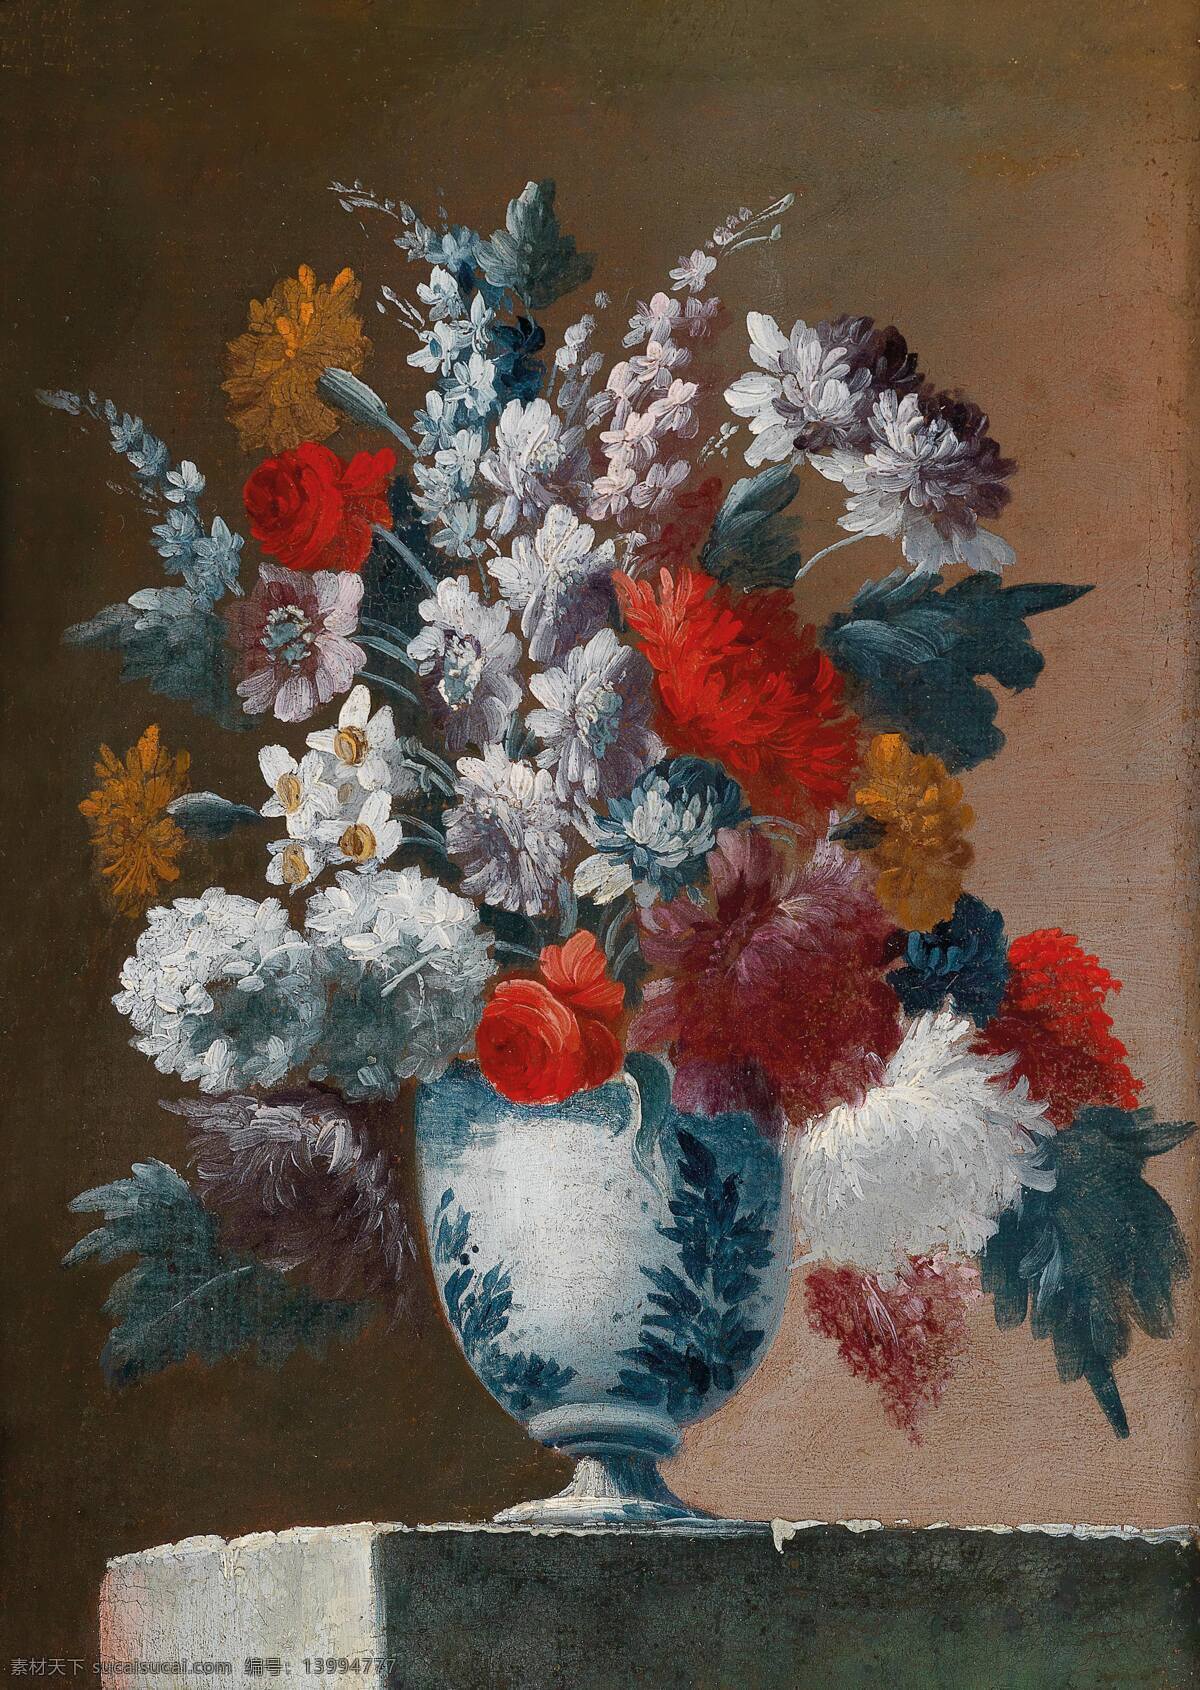 朱 塞 佩拉 瓦尼亚 作品 静物鲜花 混搭鲜花 蓝色条纹花瓶 水泥台 古典油画 油画 文化艺术 绘画书法